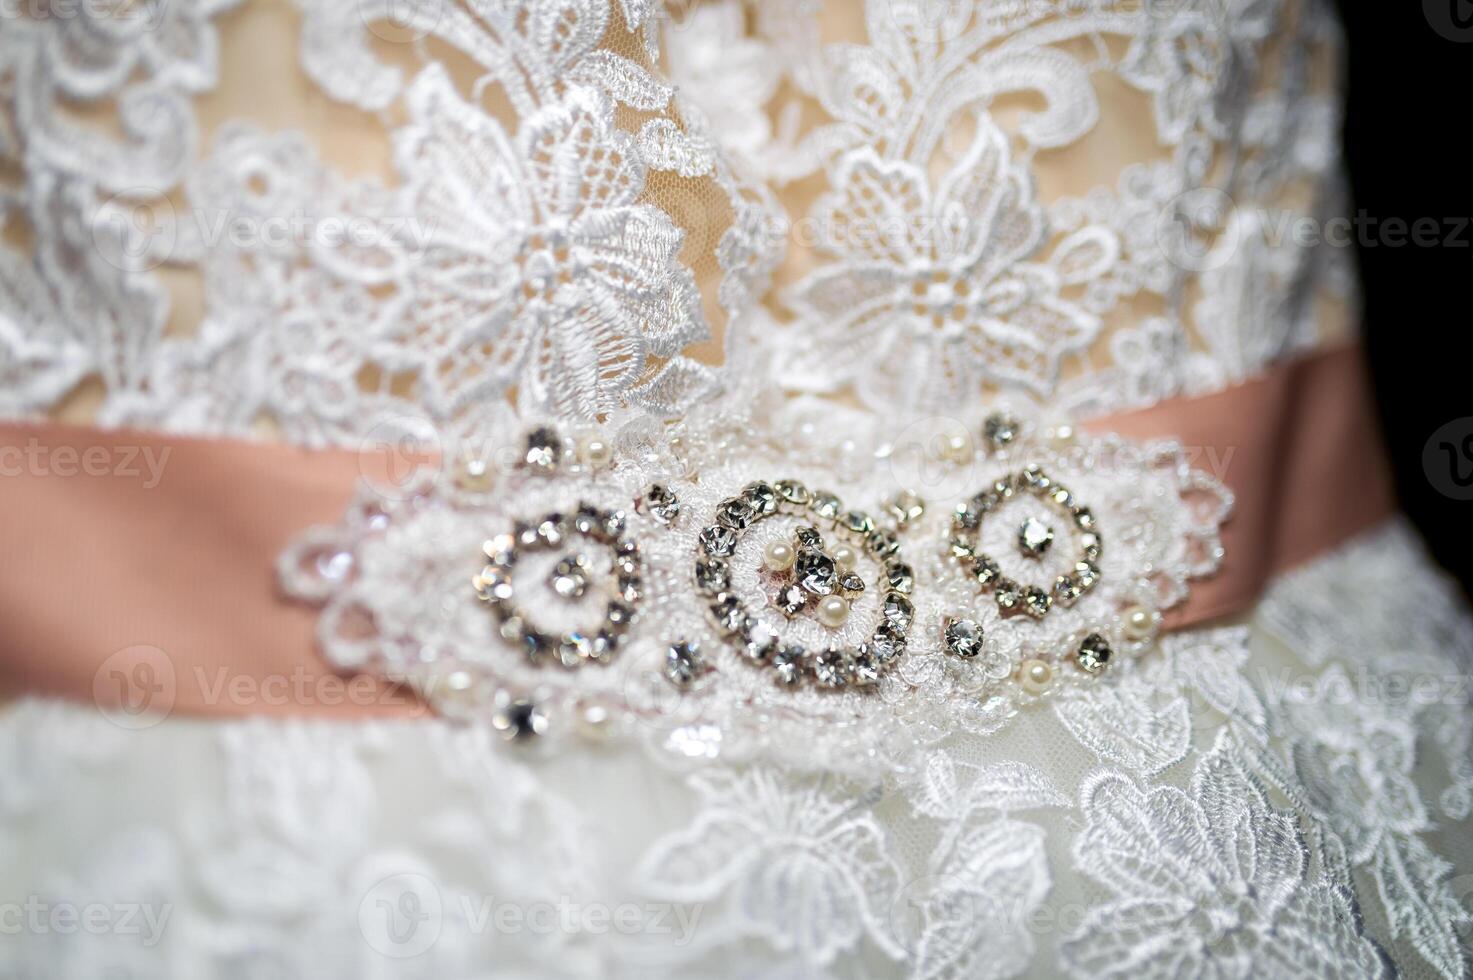 fragmento de un Boda vestir con un cinturón decorado con precioso piedras y perlas de la novia vestido. Boda concepto foto